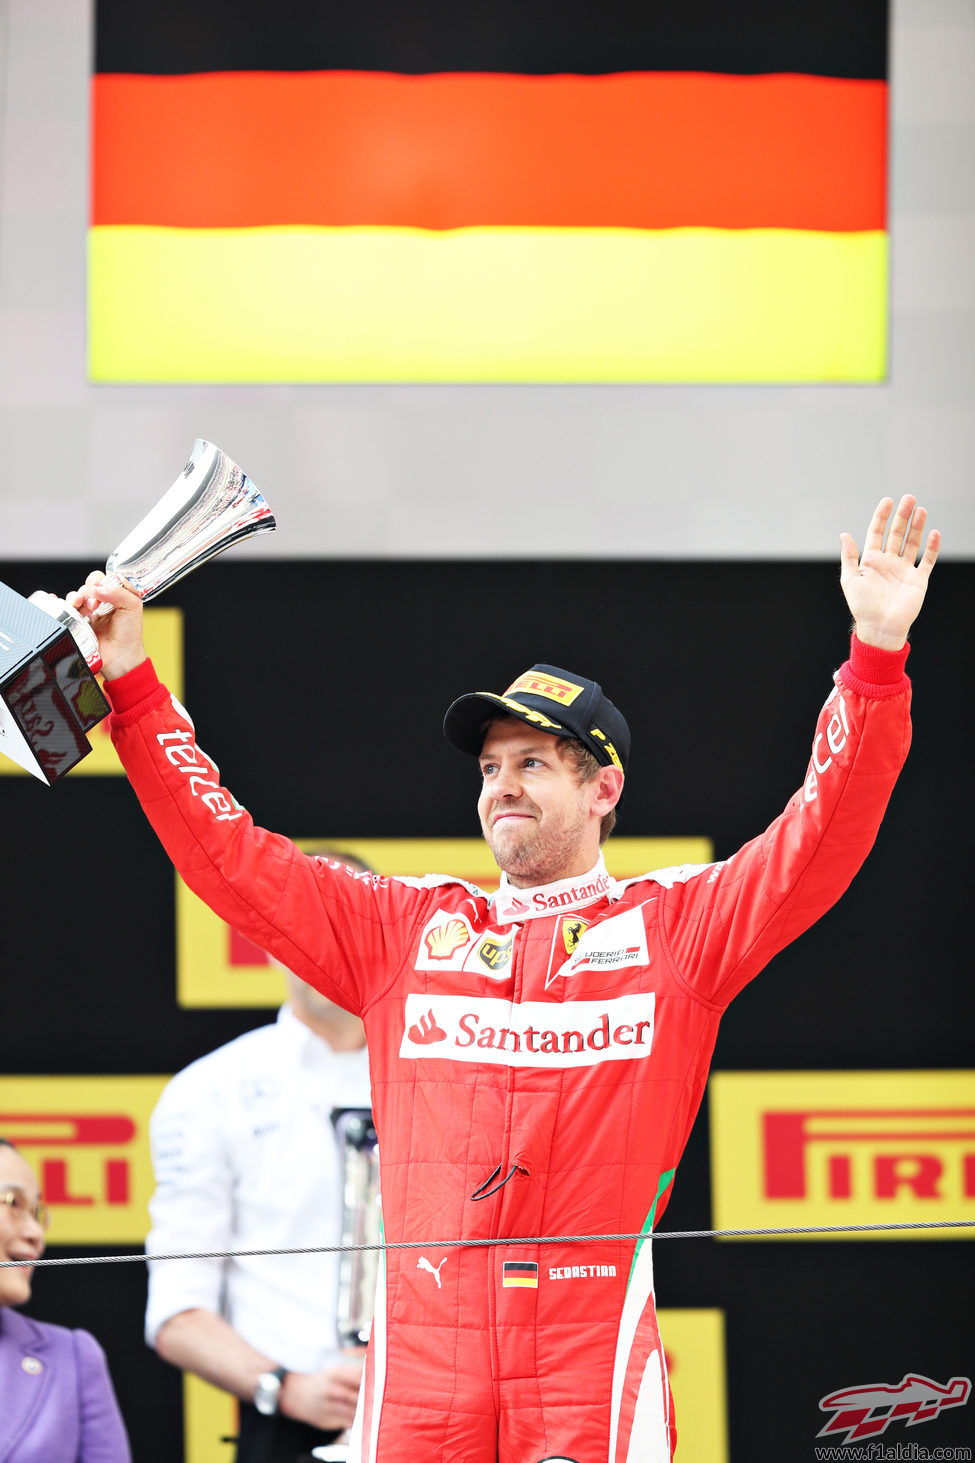 Sebastian Vettel regresa al podio en China